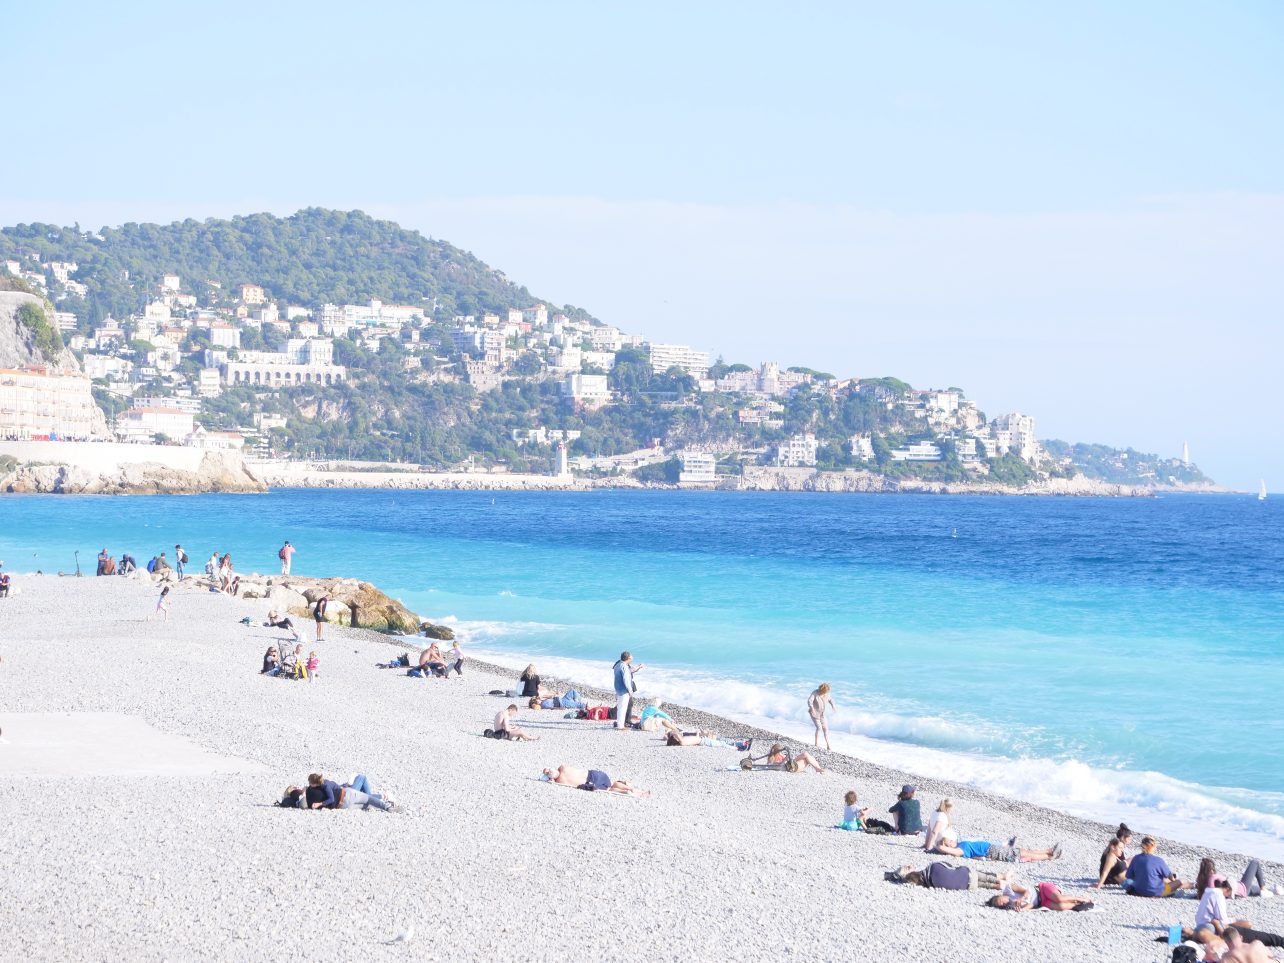 La place de Nice et son eau bleue turquoise